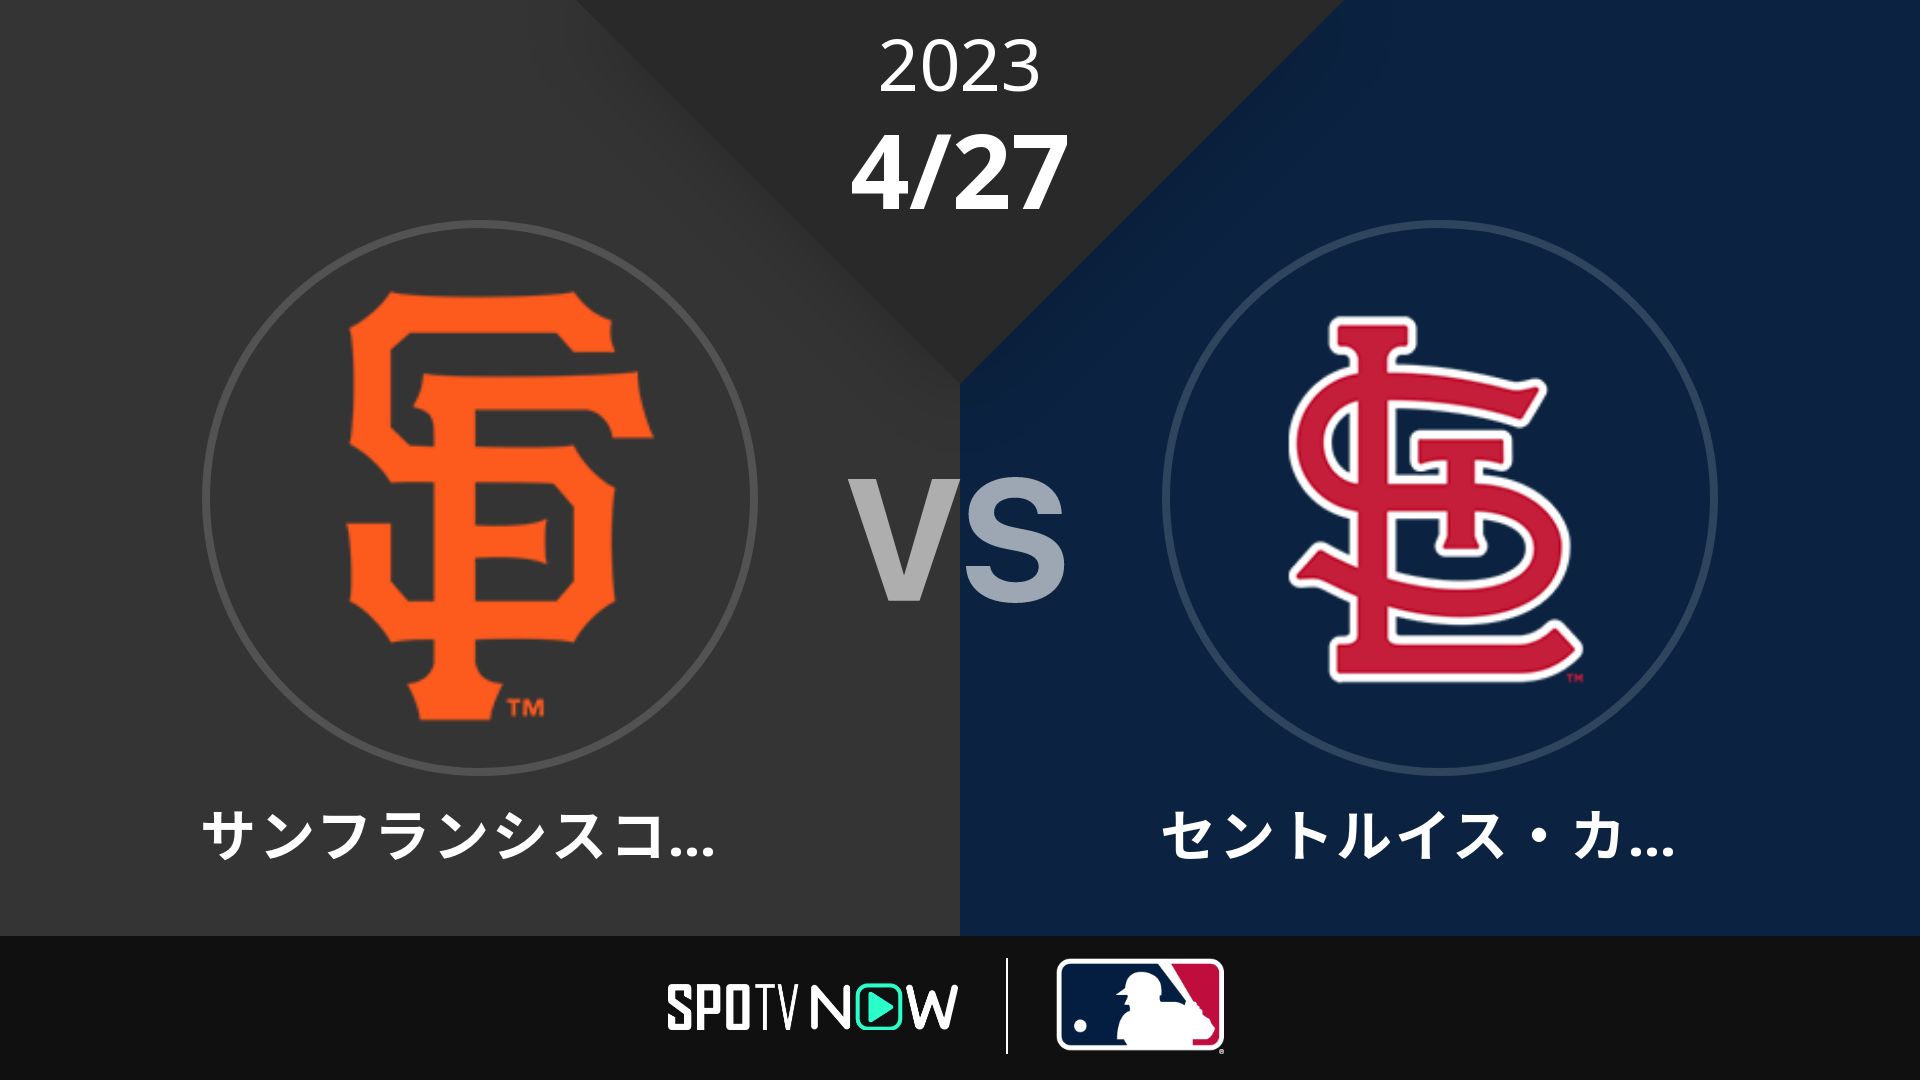 2023/4/27 ジャイアンツ vs カージナルス [MLB]